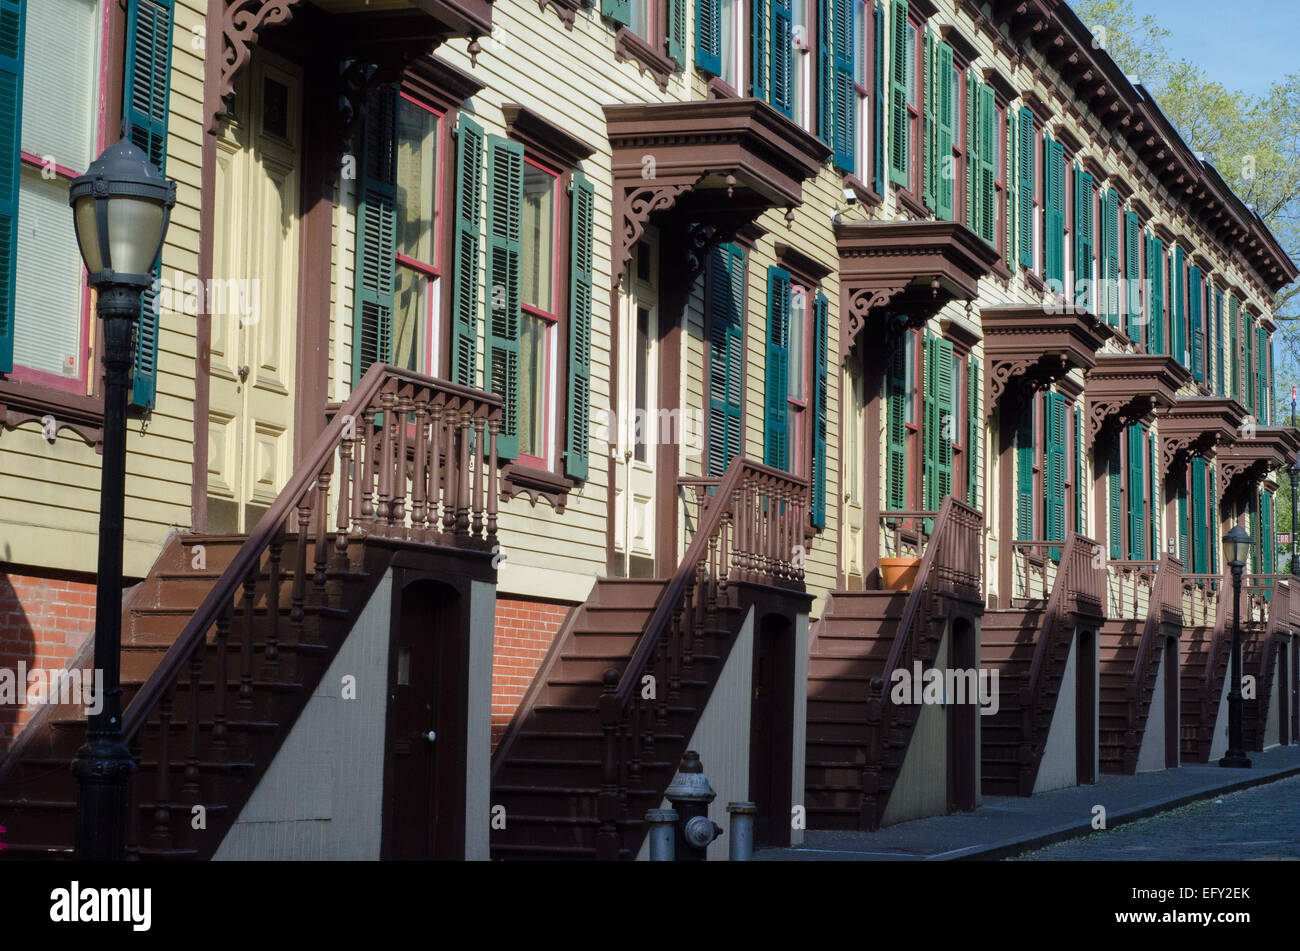 Le Jumel Terrace Historic District est un coin inconnu de la ville de New York, connu pour sa 19e siècle rowhouses. Banque D'Images